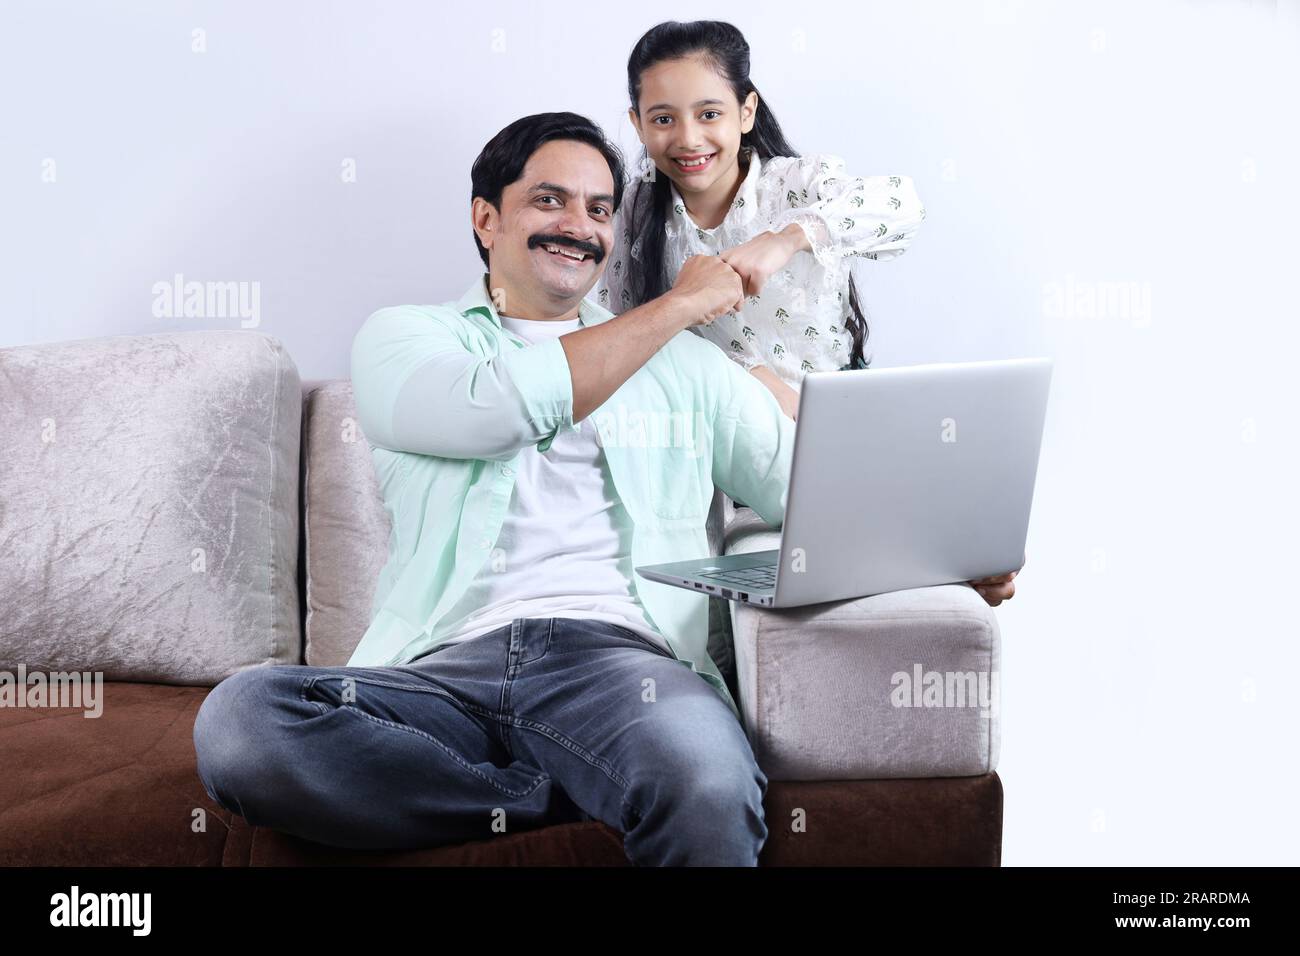 Felice famiglia indiana di padre e figlia single che fa surf con un computer portatile e si diverte piacevolmente insieme. La famiglia sta indagando sul portatile. Foto Stock